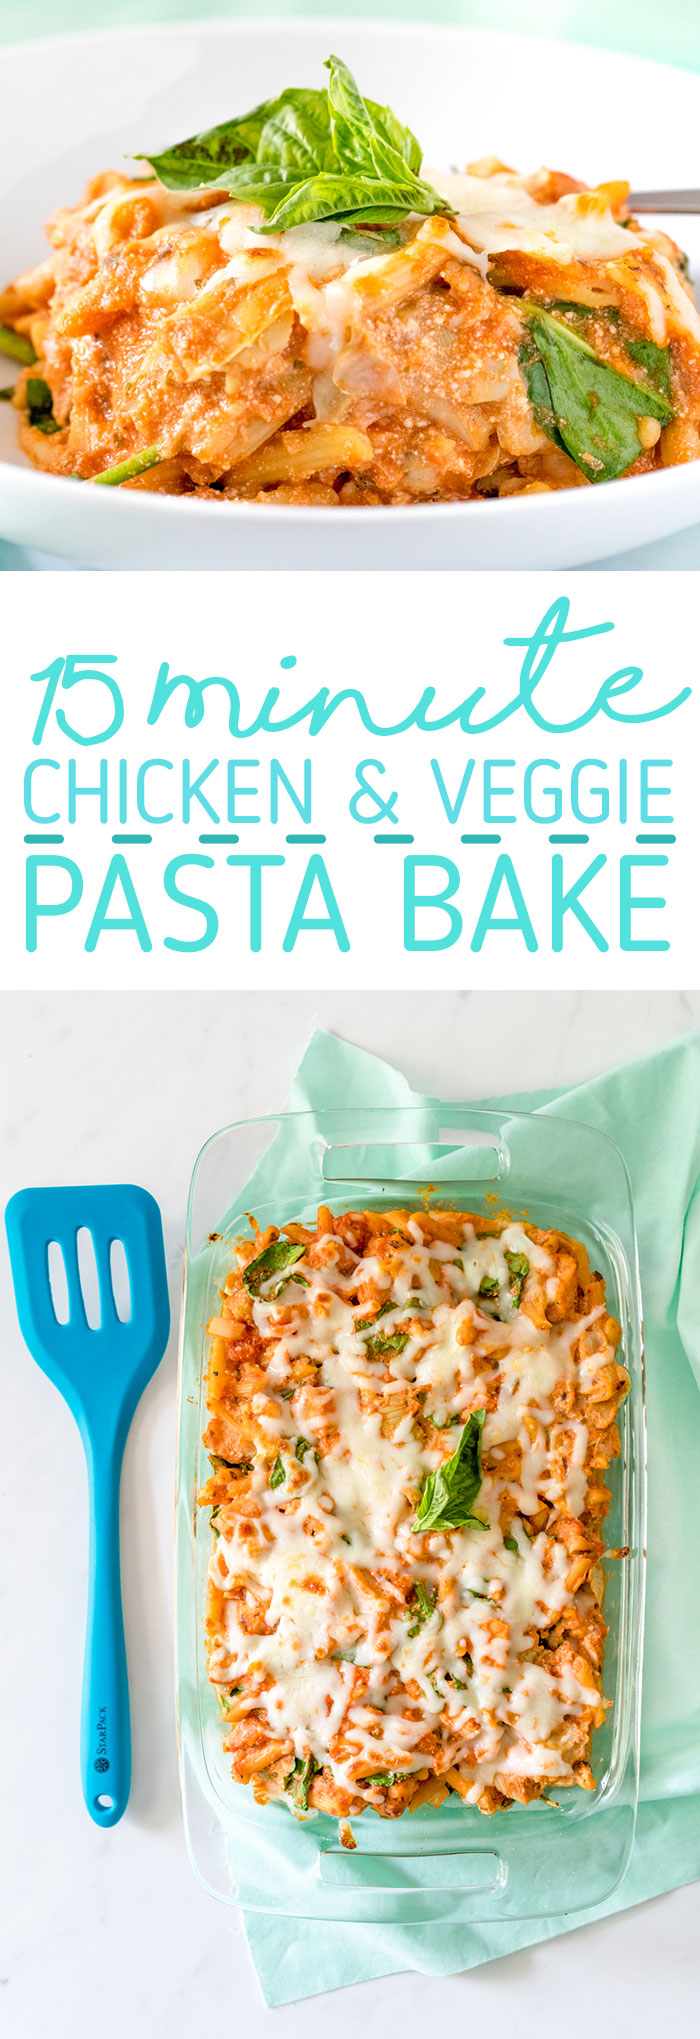 15 minute chicken and veggie pasta bake